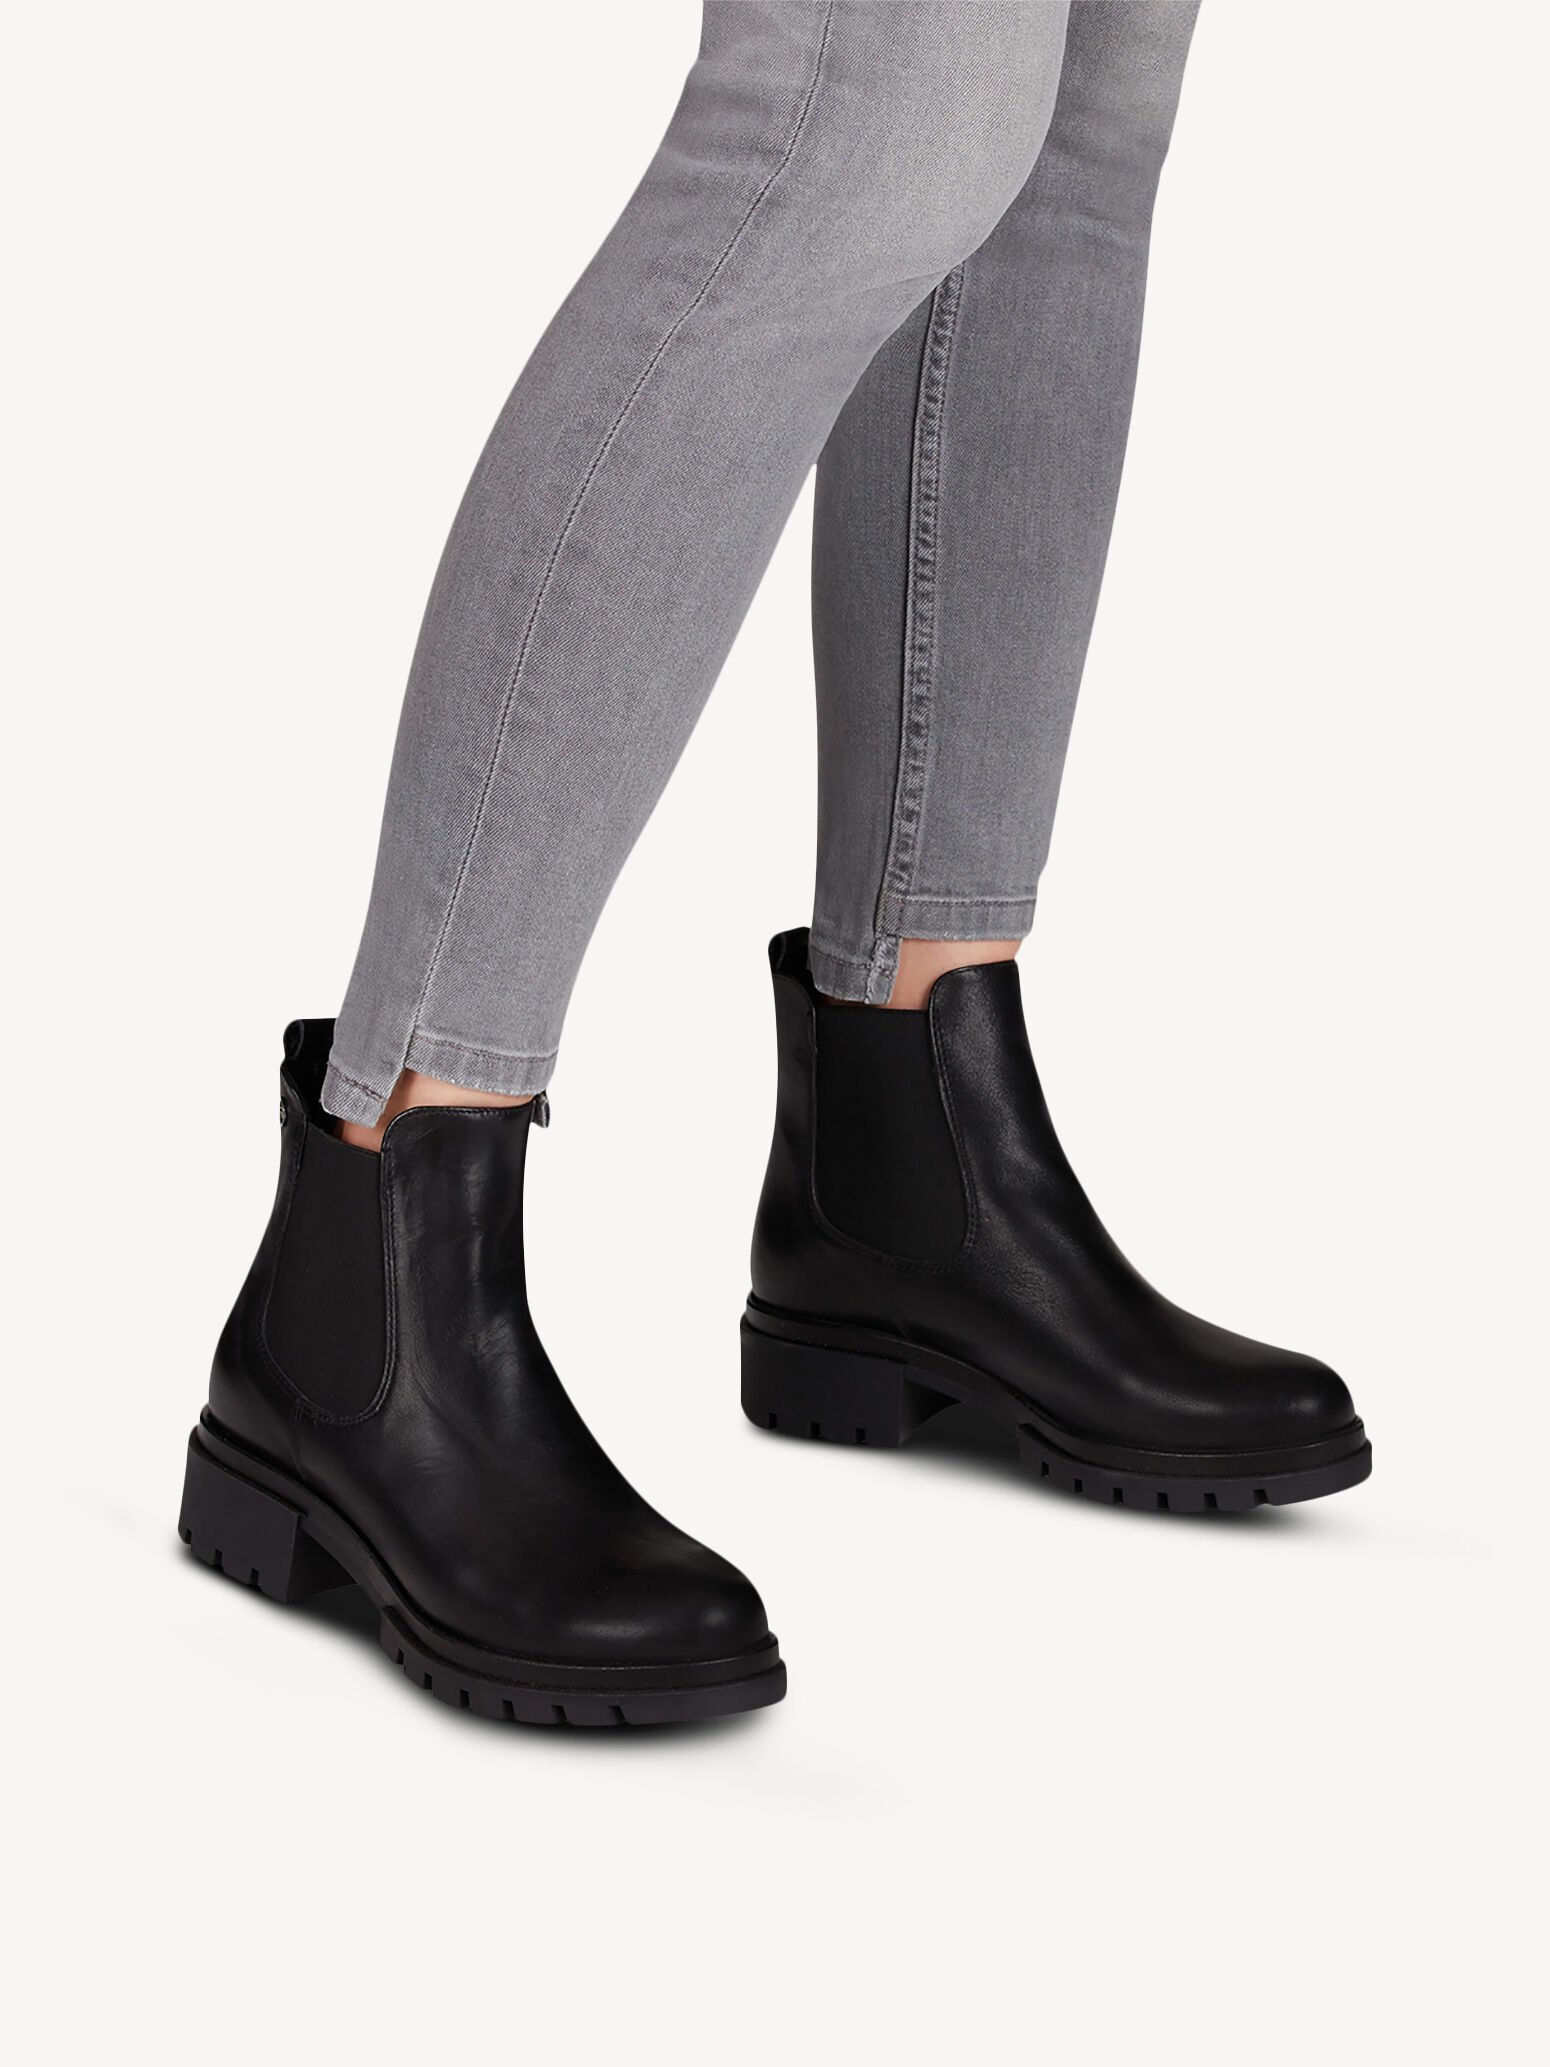 Leather boot 1-1-25405-25: Buy Tamaris Booties online!